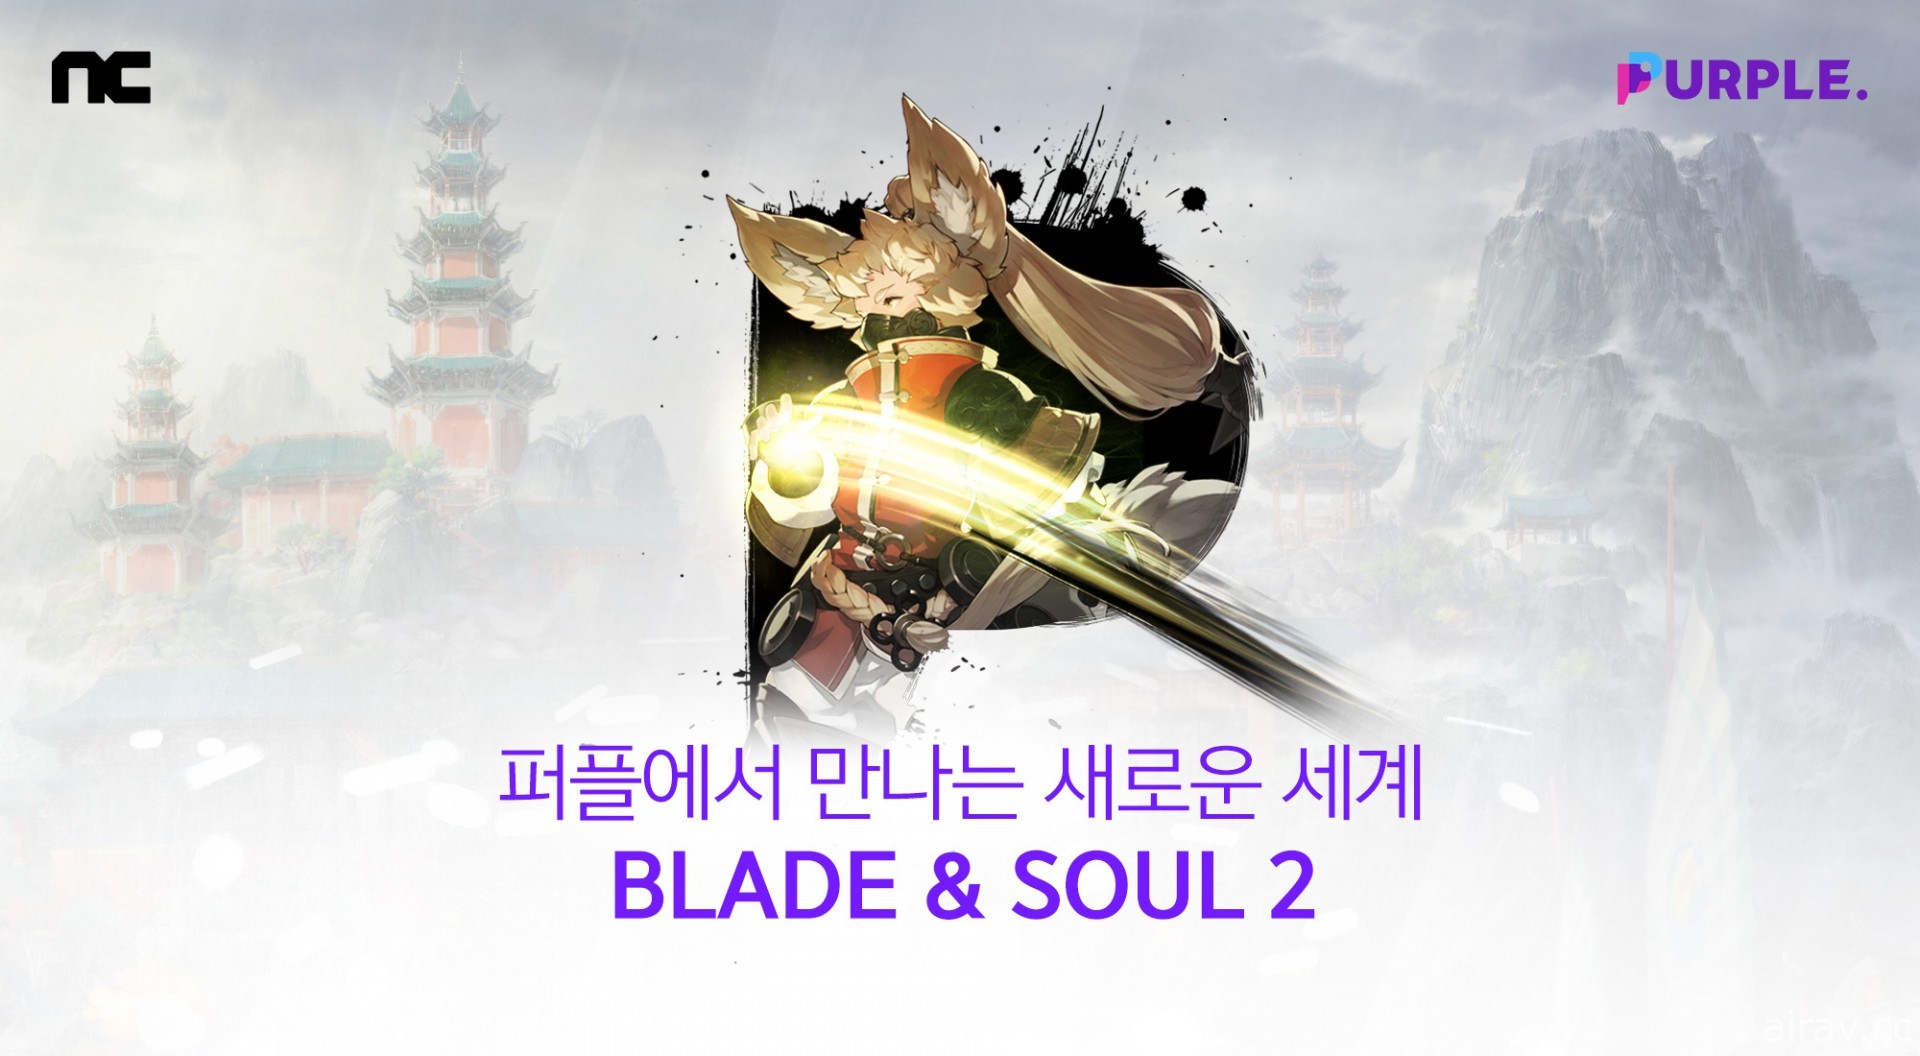 《劍靈 2》於韓國開放預先下載 共計 746 萬預先註冊數量打破《天堂 2 M》紀錄